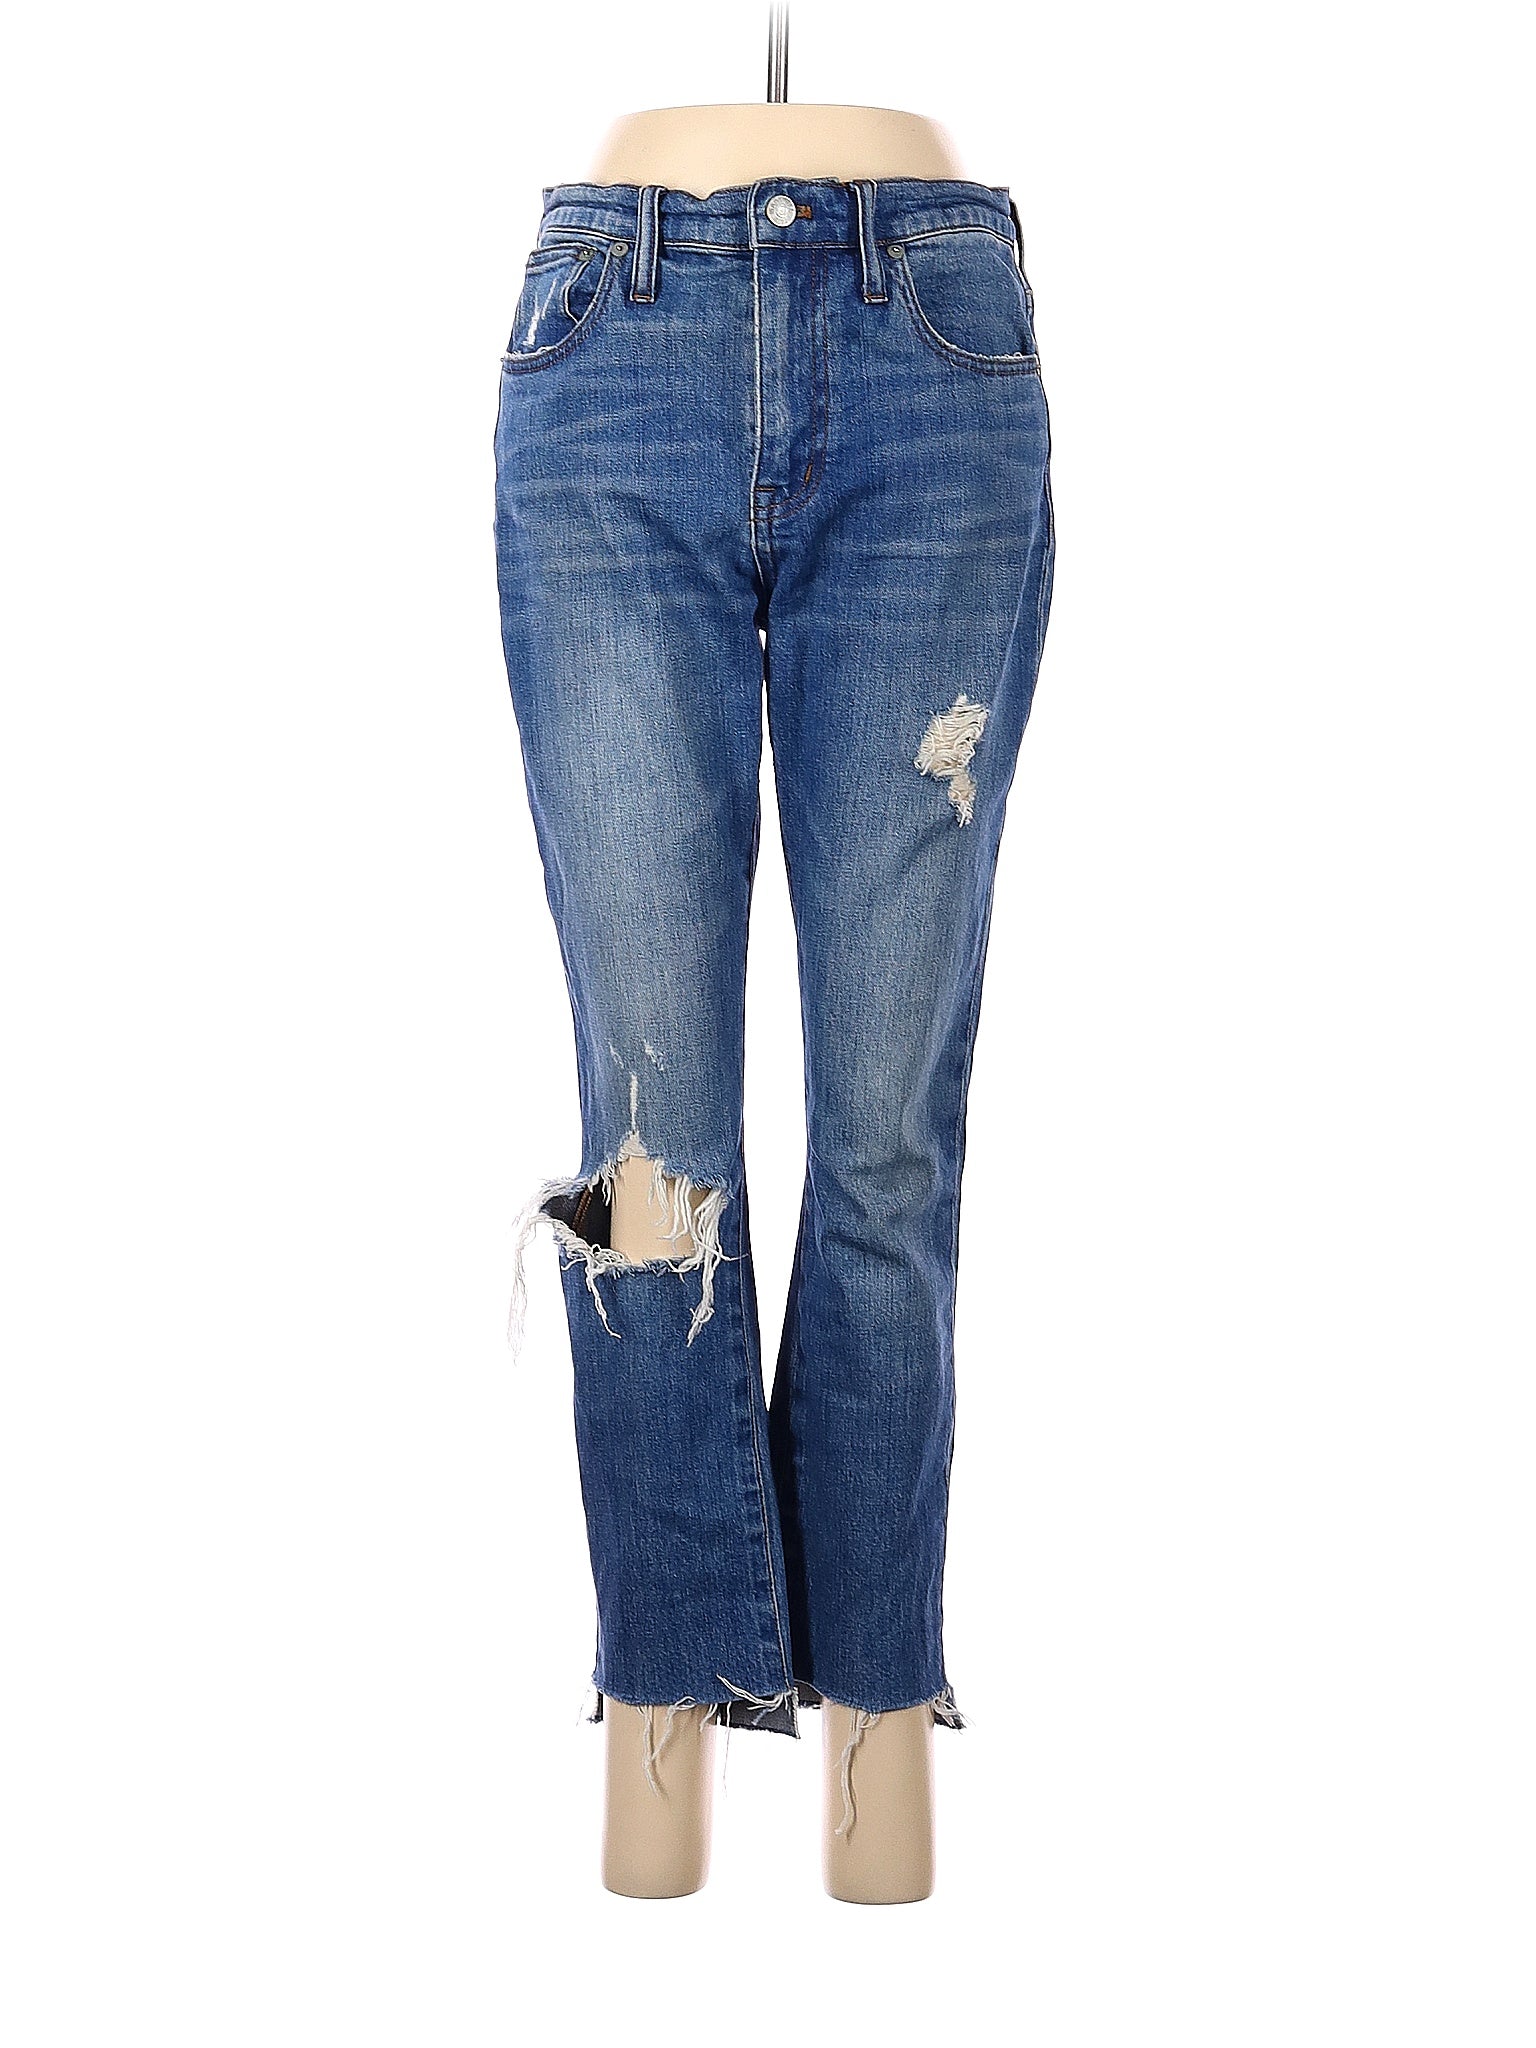 Boyjeans Jeans in Medium Wash waist size - 26